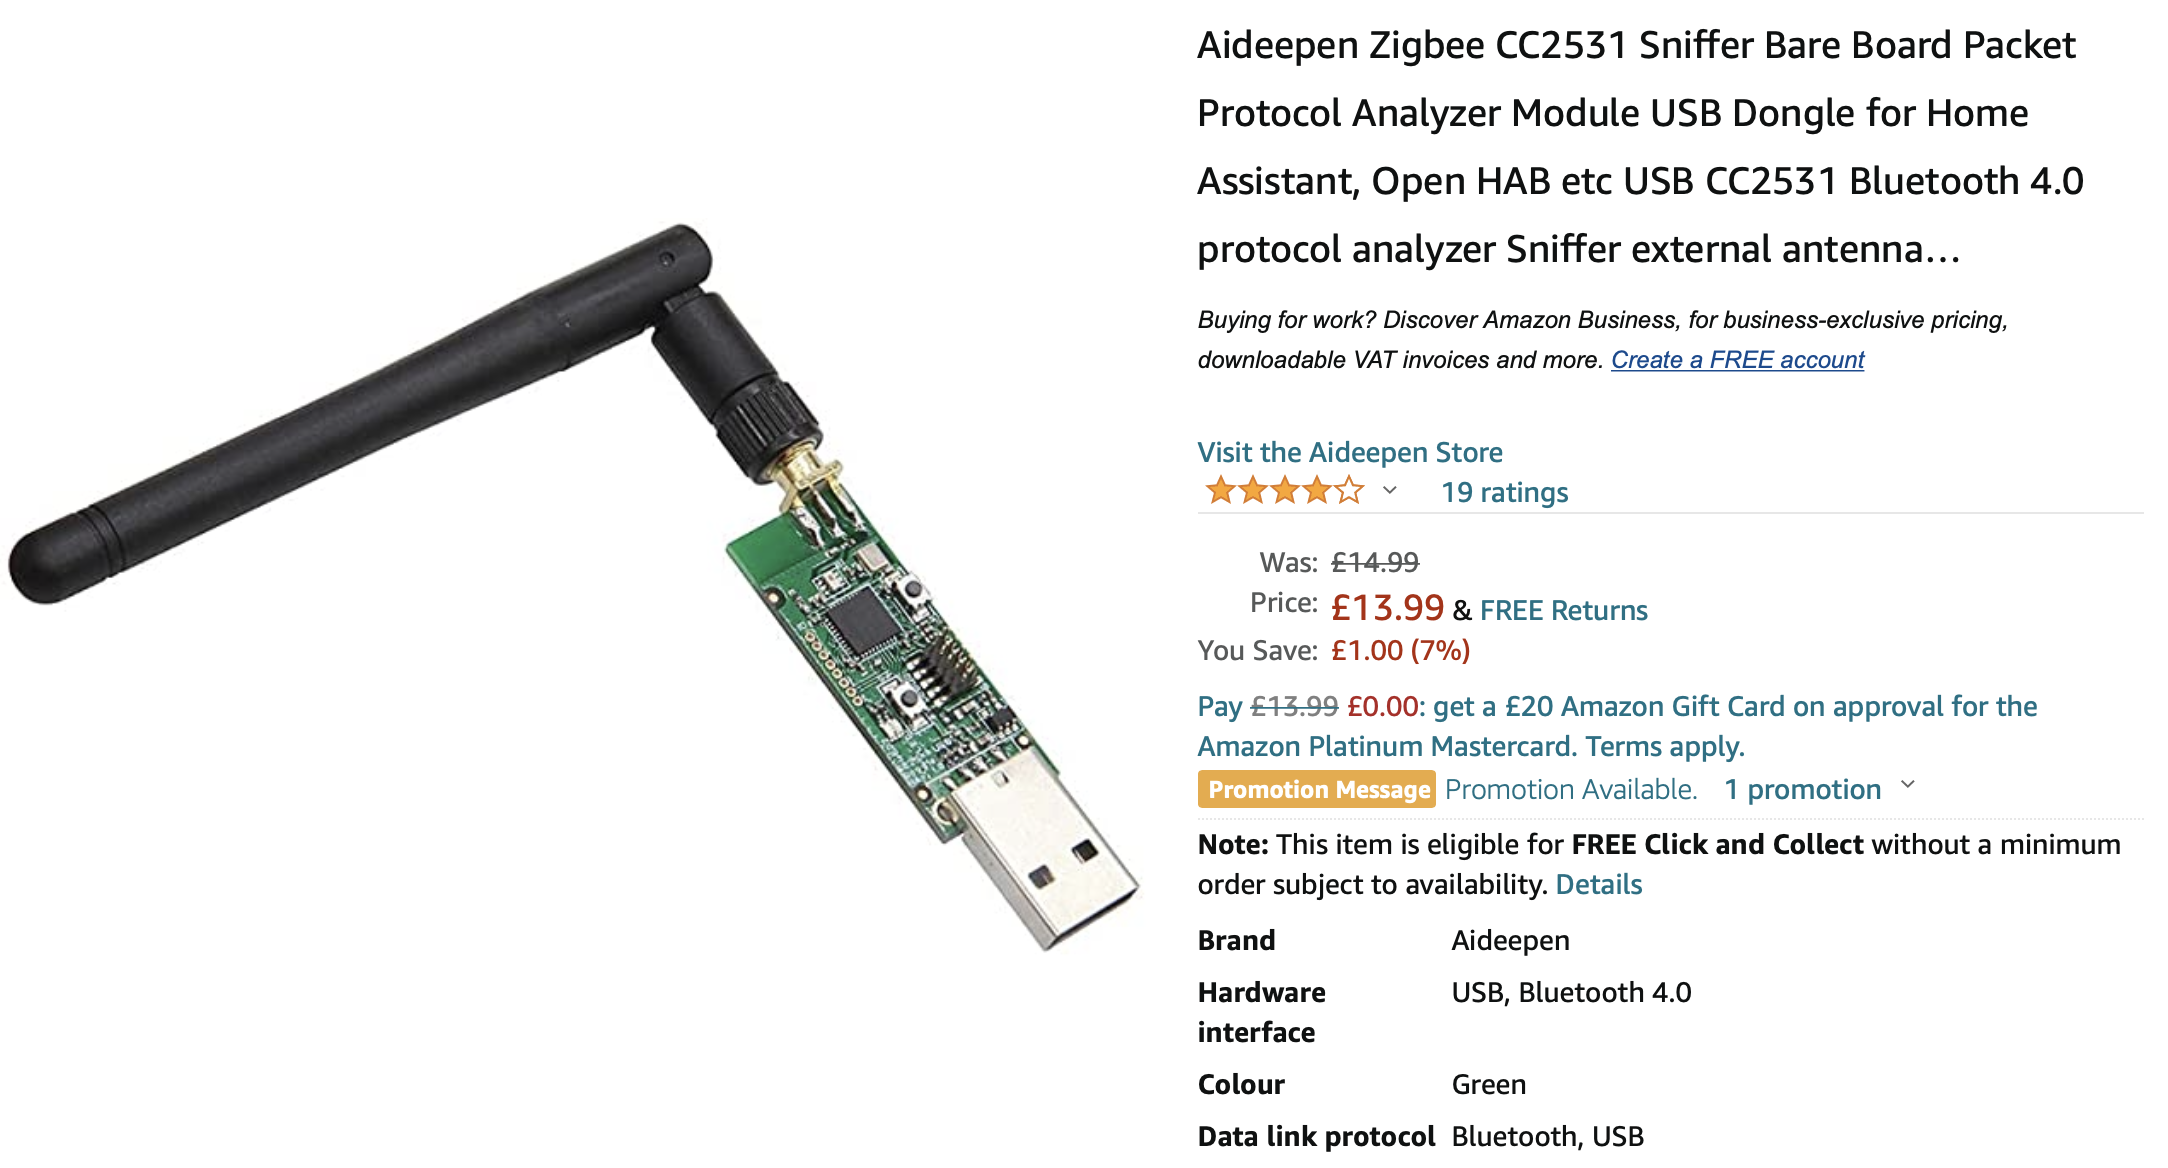 Zigbee USB Dongle on Amazon.co.uk